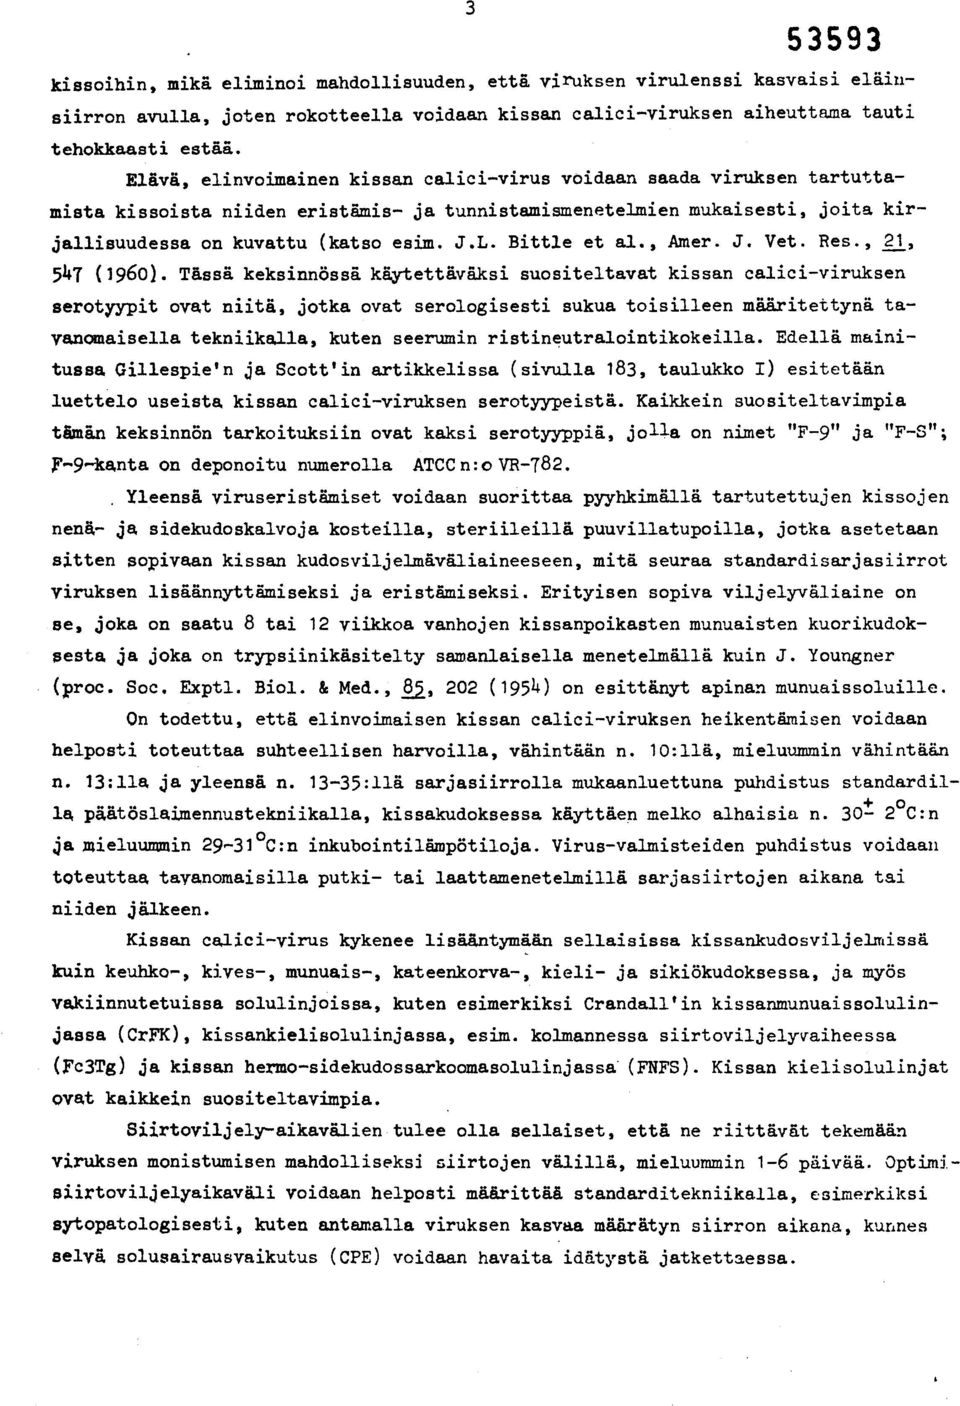 Bittle et al., Amer. J. Vet. Res., 21, 547 (1960).